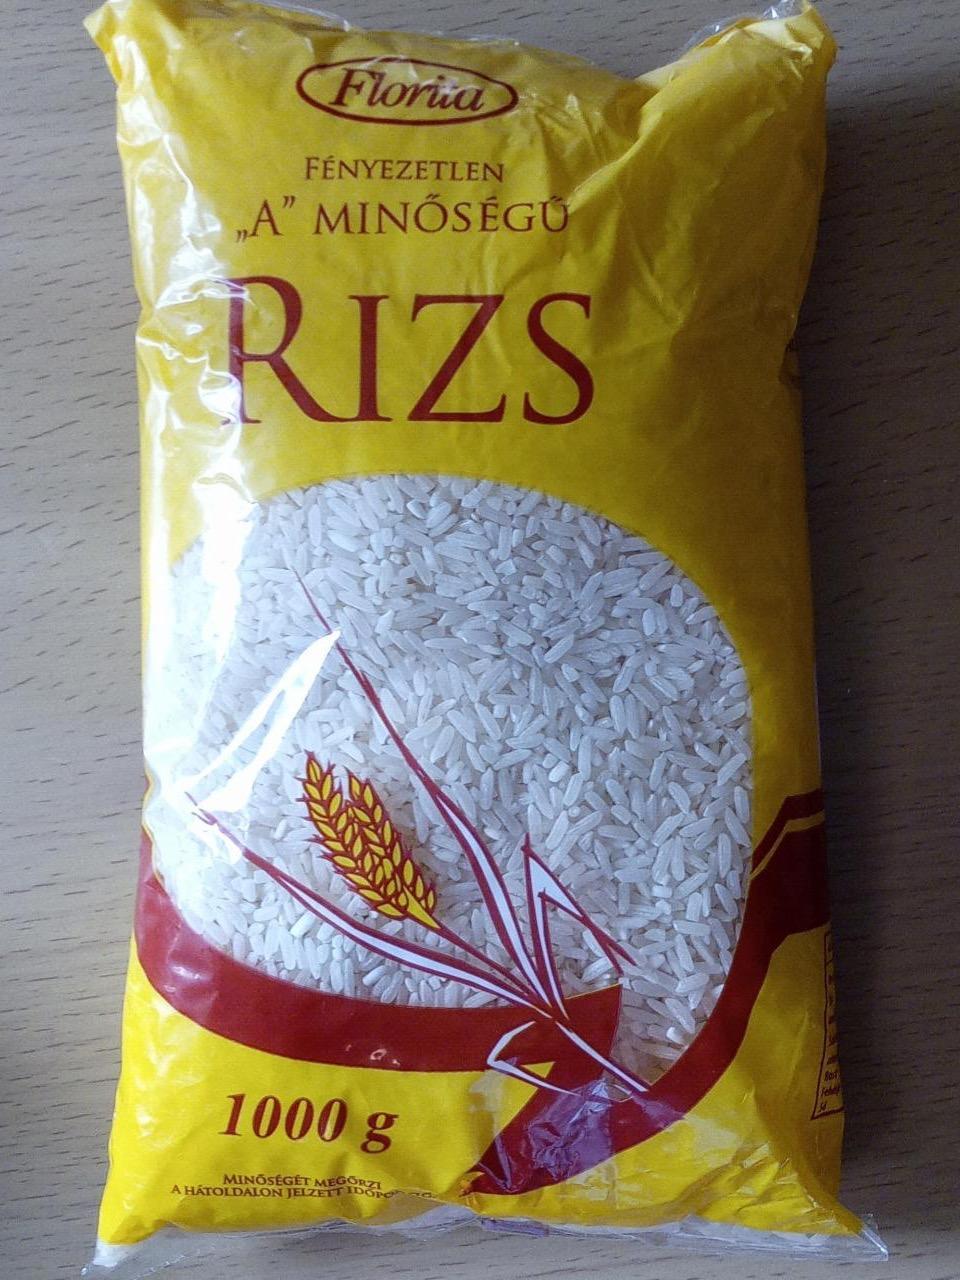 Képek - Fényezetlen 'A' minőségű rizs Florita